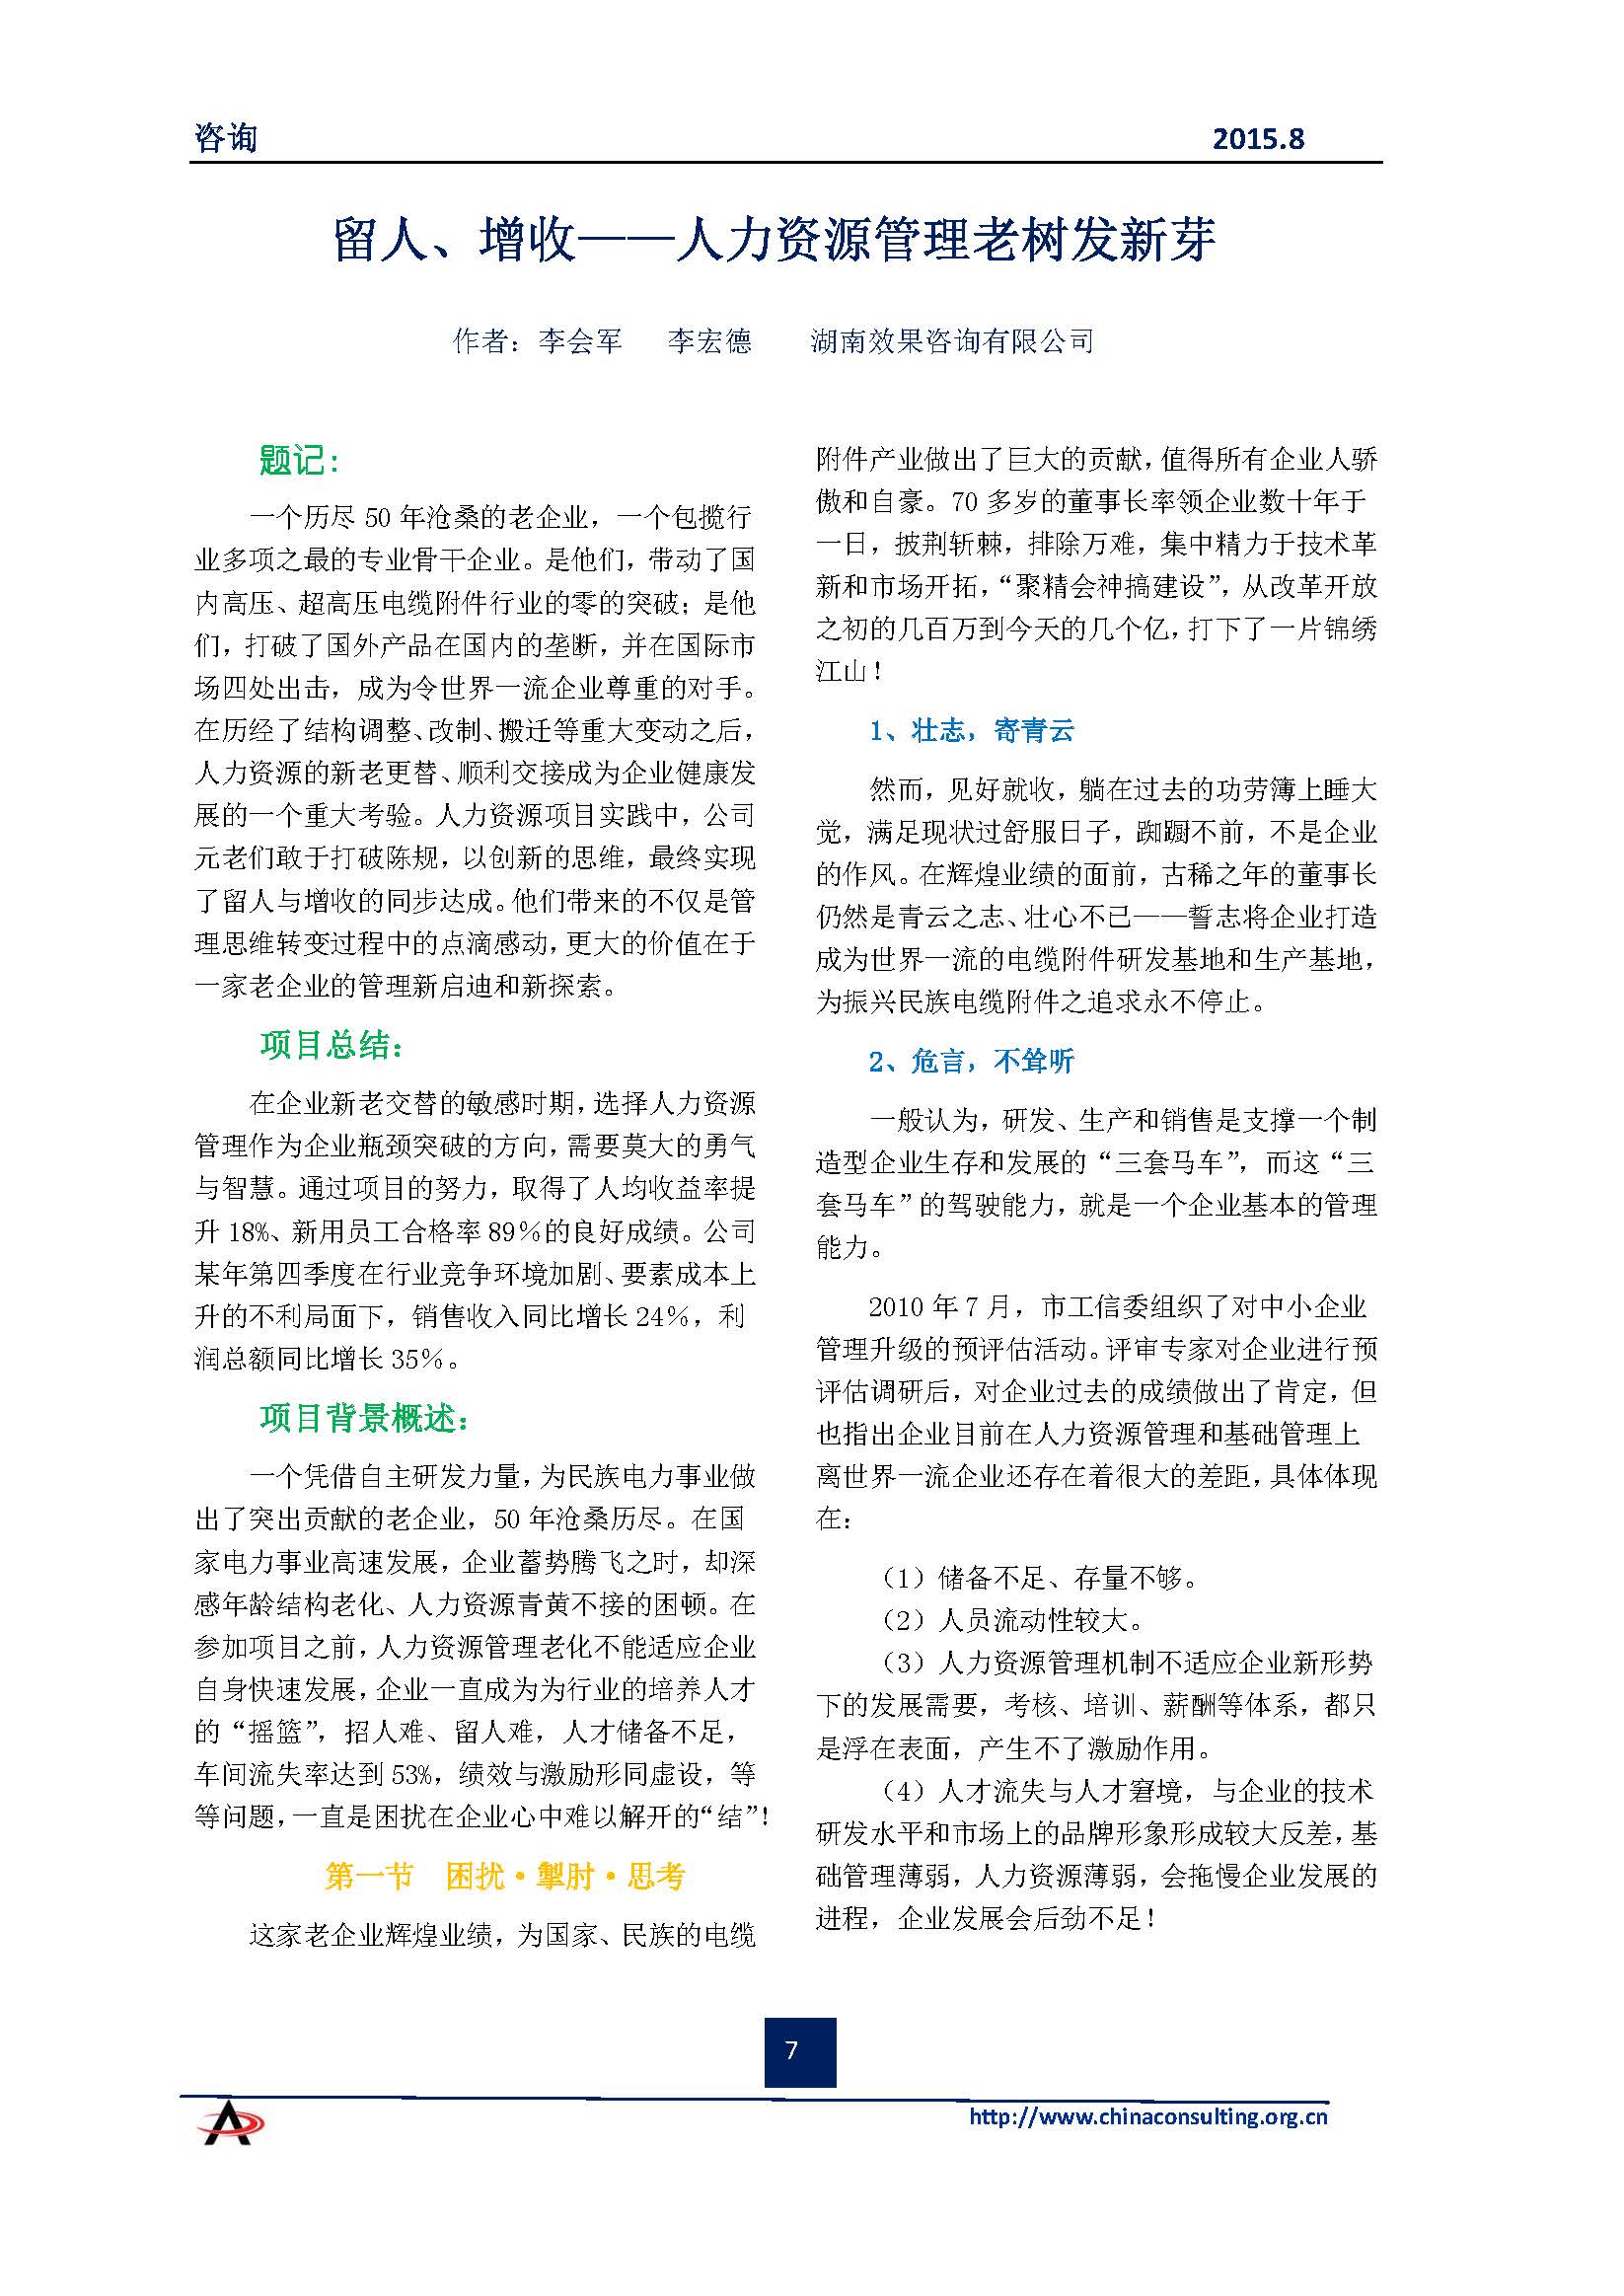 中国科技咨询协会会刊（第四十期）初稿_页面_09.jpg